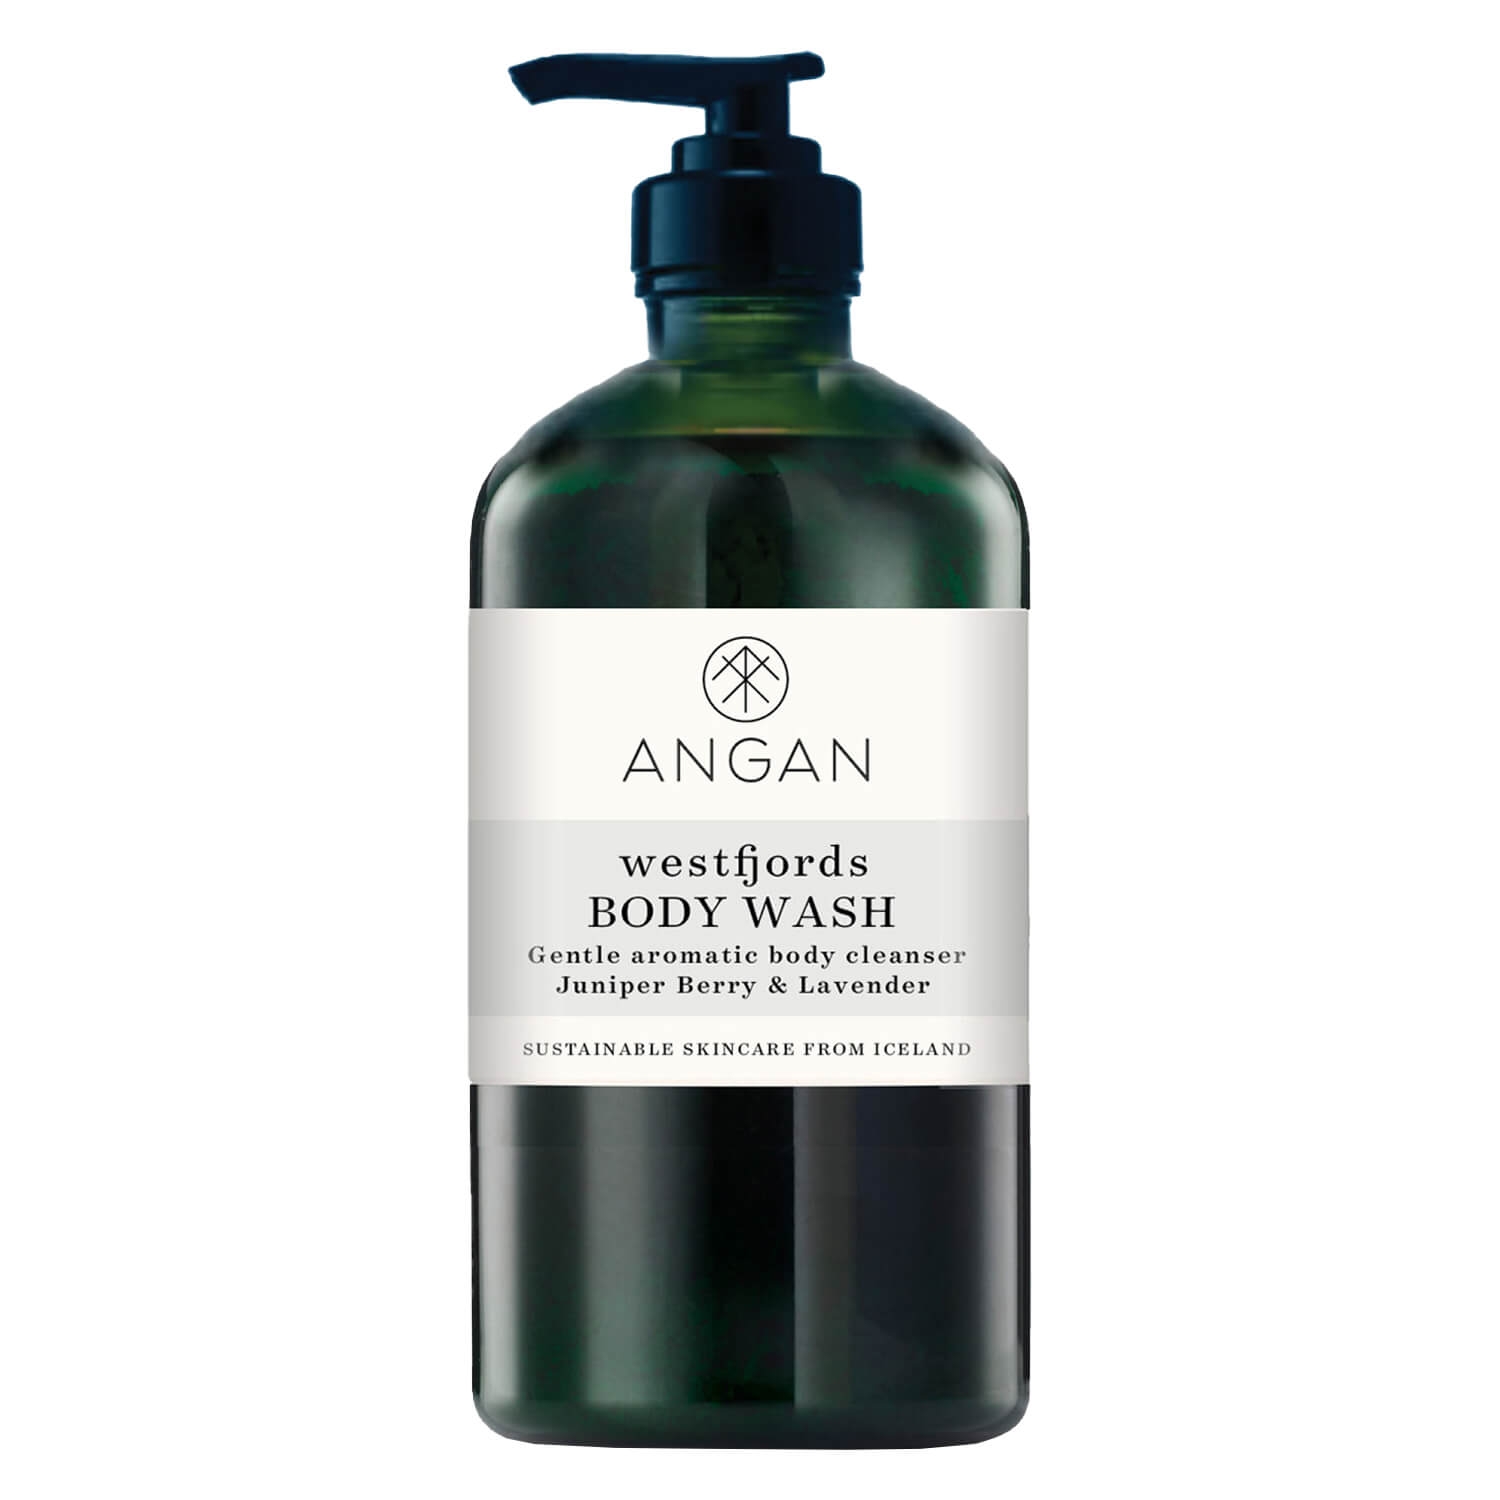 Produktbild von ANGAN - Westfjords Body Wash